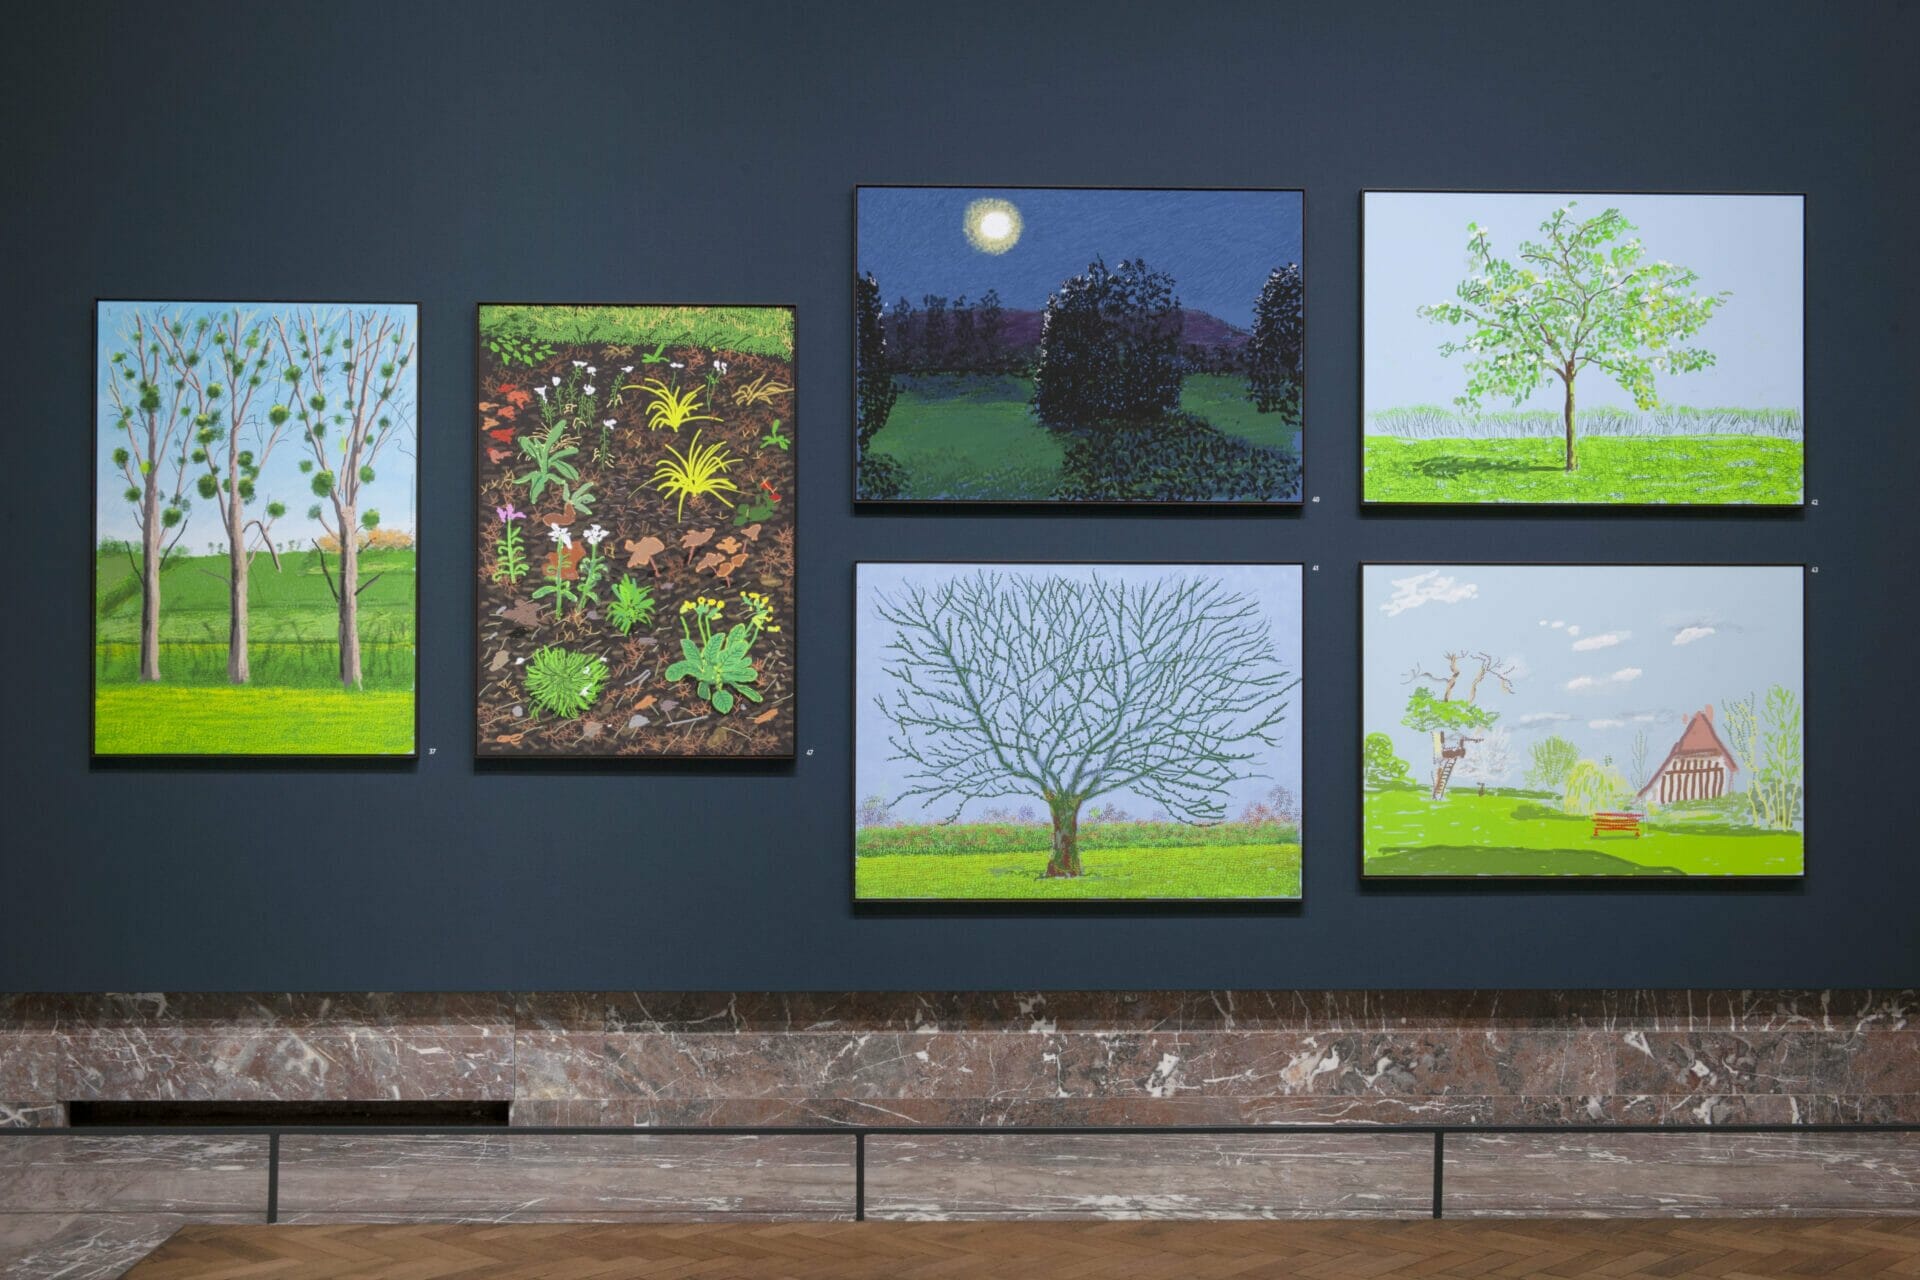 Twee keer David Hockney in Bozar Brussel